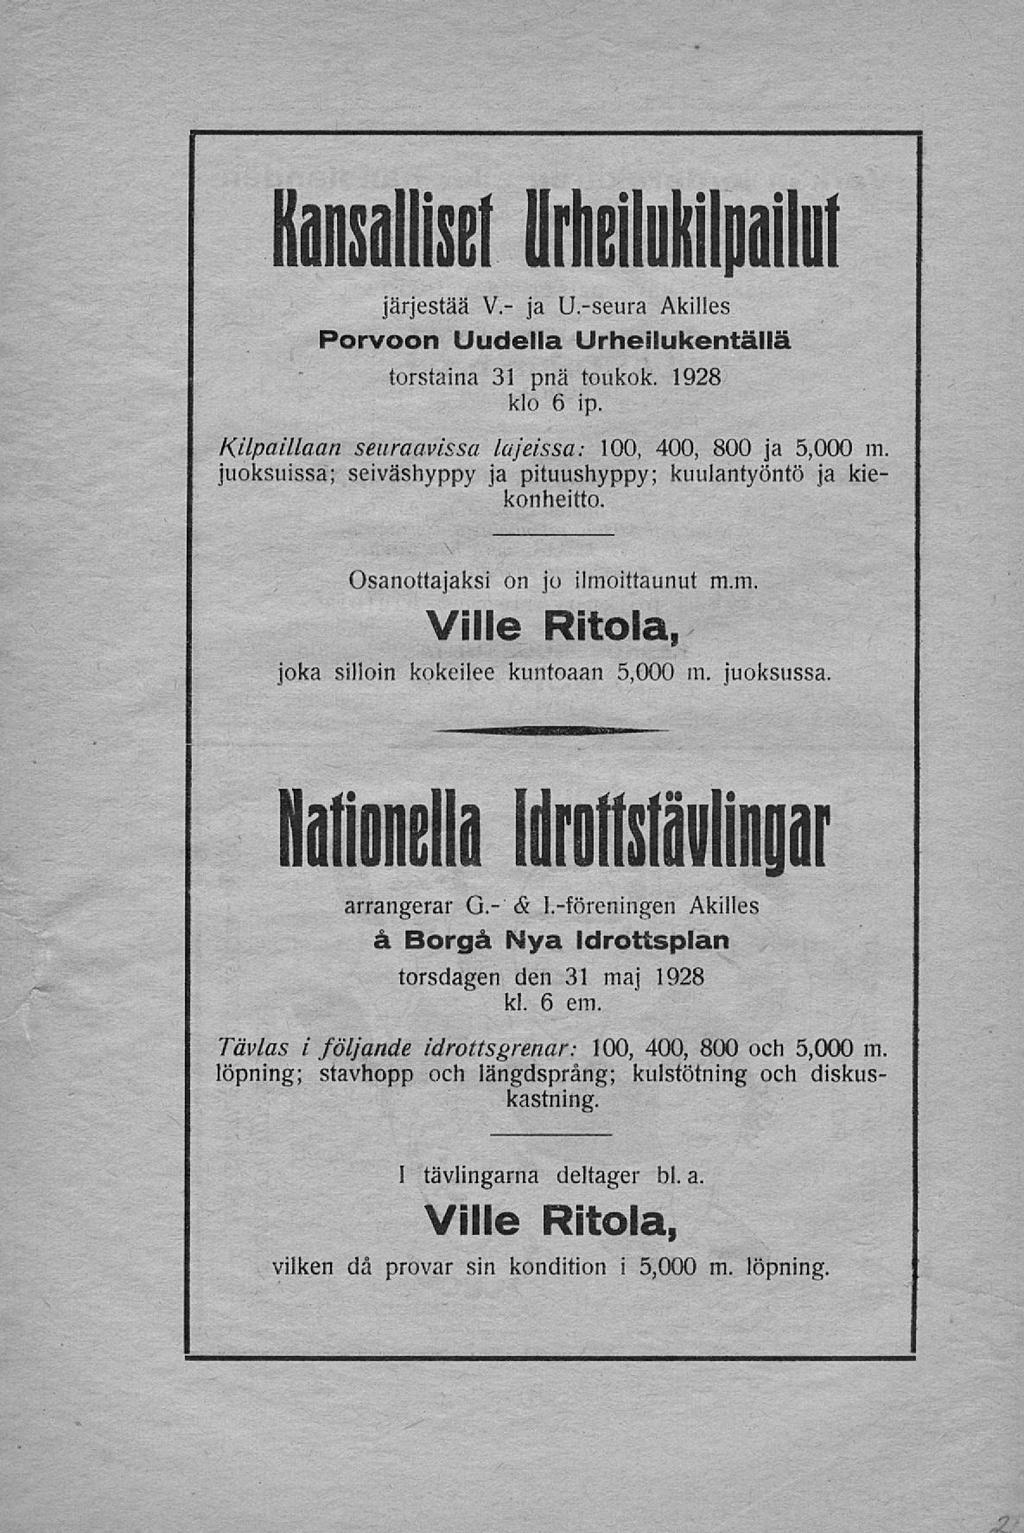 Kansalliset Urheilukilpailut järjestää V.- ja U.-seura Akilles Porvoon Uudella Urheilukentällä torstaina 31 pnä toukok. 1928 klo 6 ip.